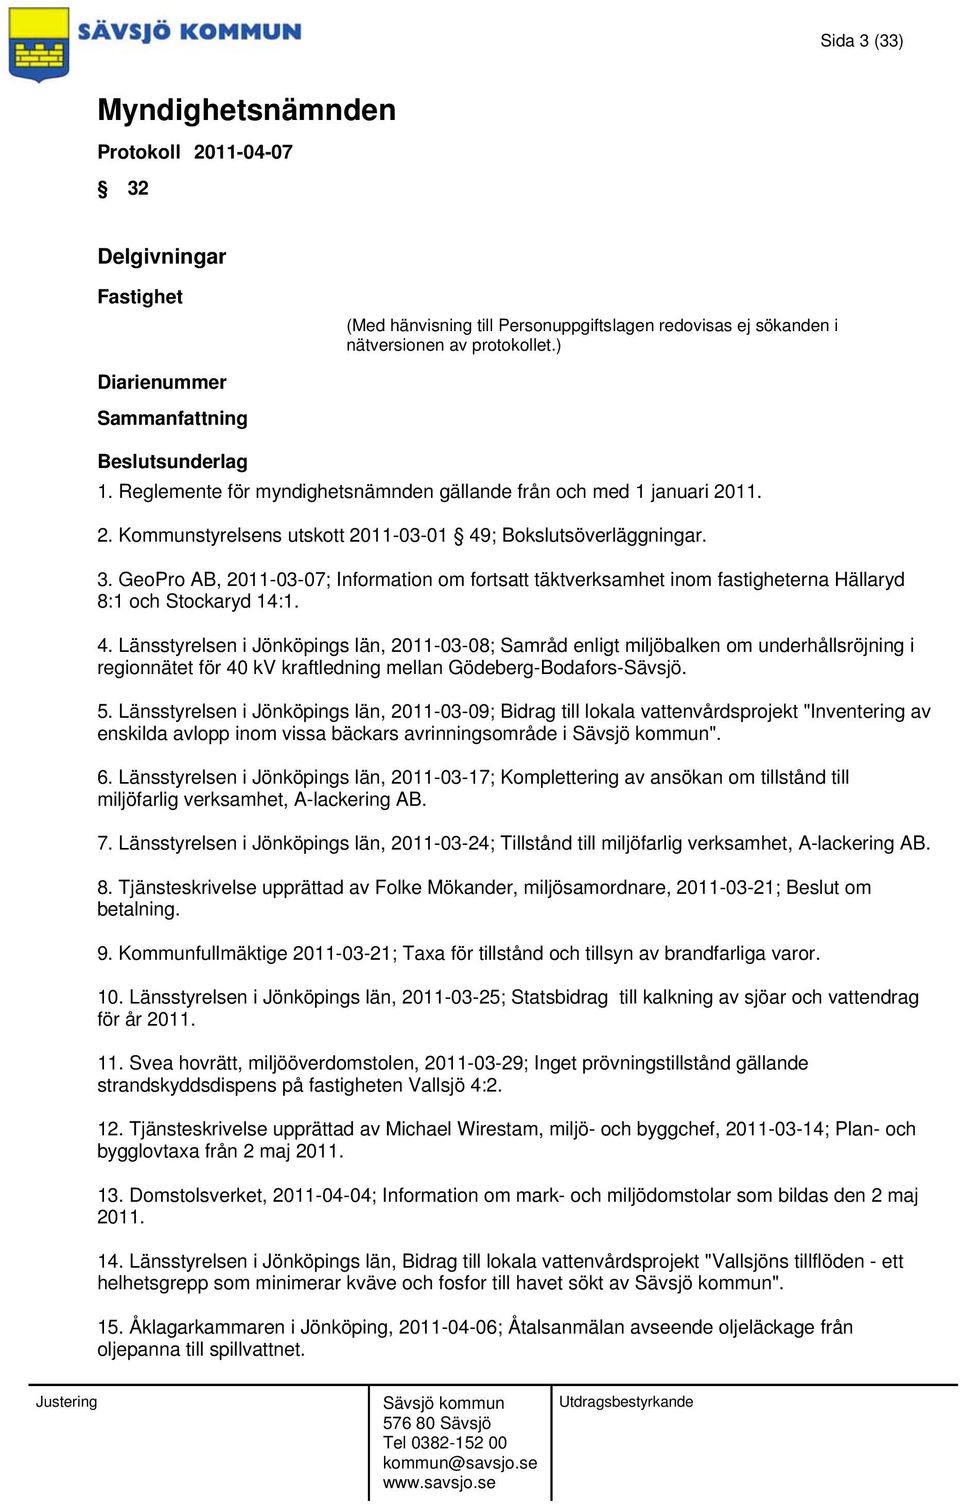 Länsstyrelsen i Jönköpings län, 2011-03-09; Bidrag till lokala vattenvårdsprojekt "Inventering av enskilda avlopp inom vissa bäckars avrinningsområde i ". 6.